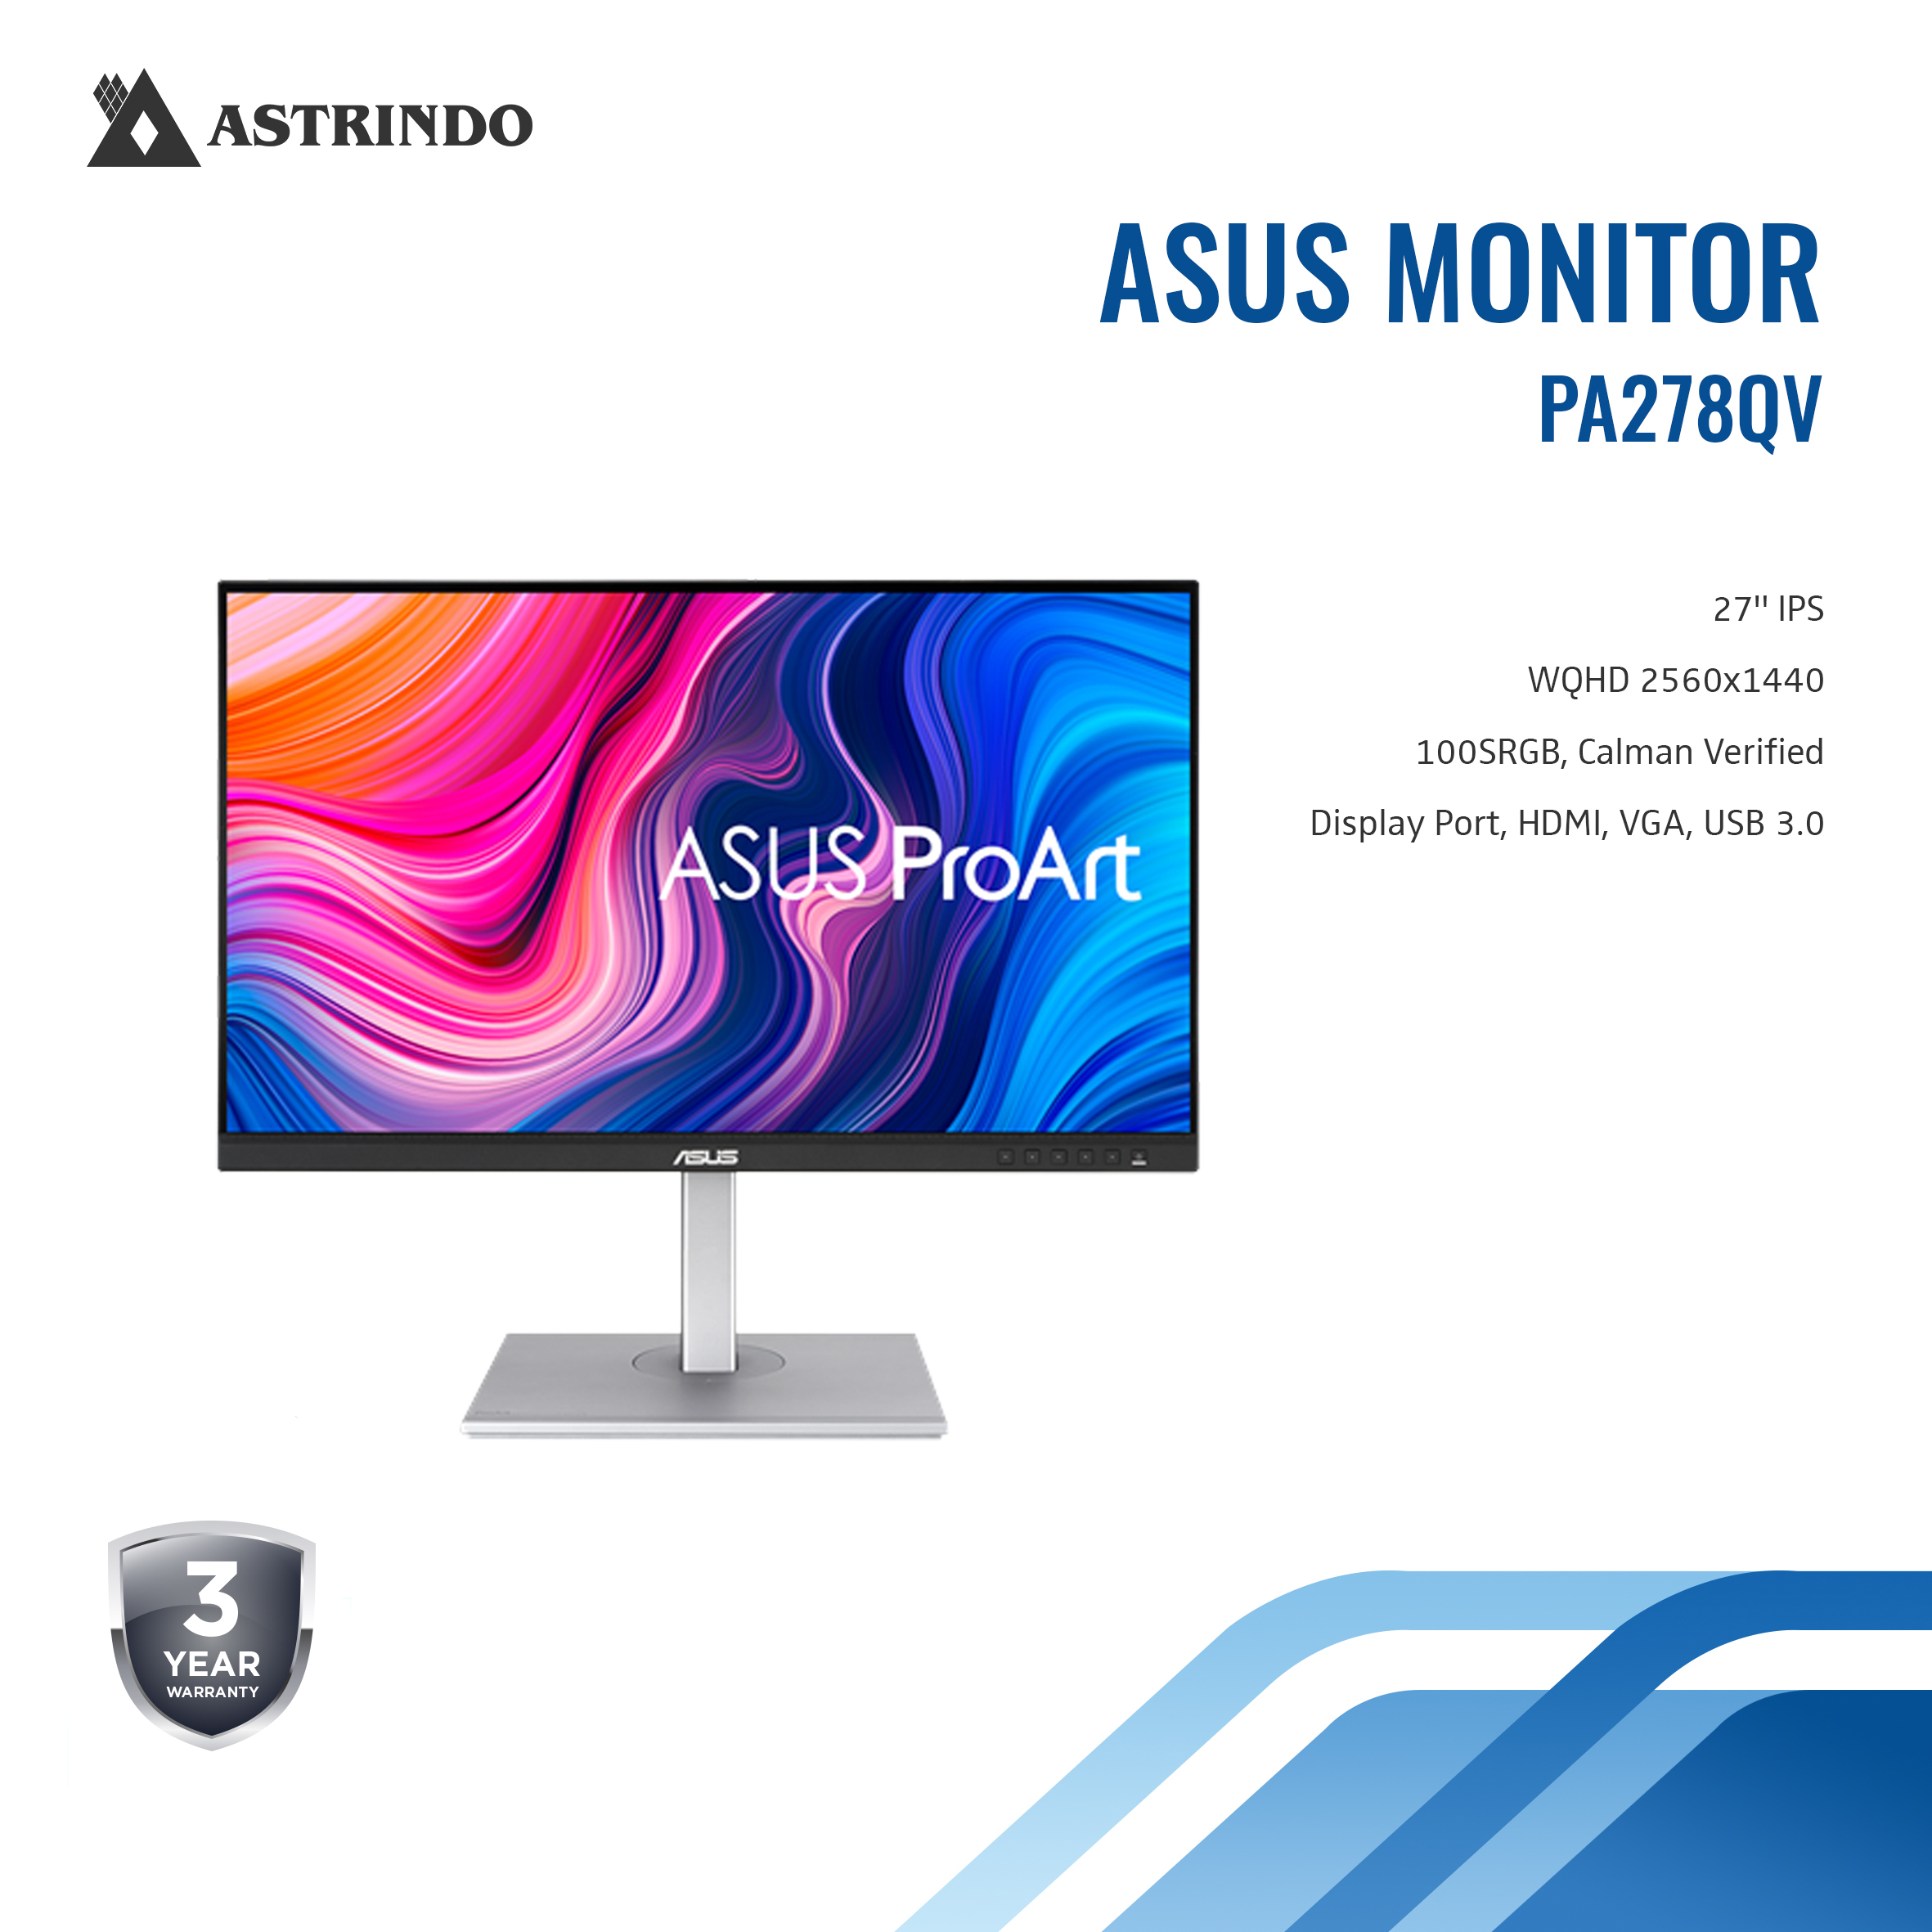 ASUS Asus Gaming Monitor PA278QV 27-inch ProArt Display